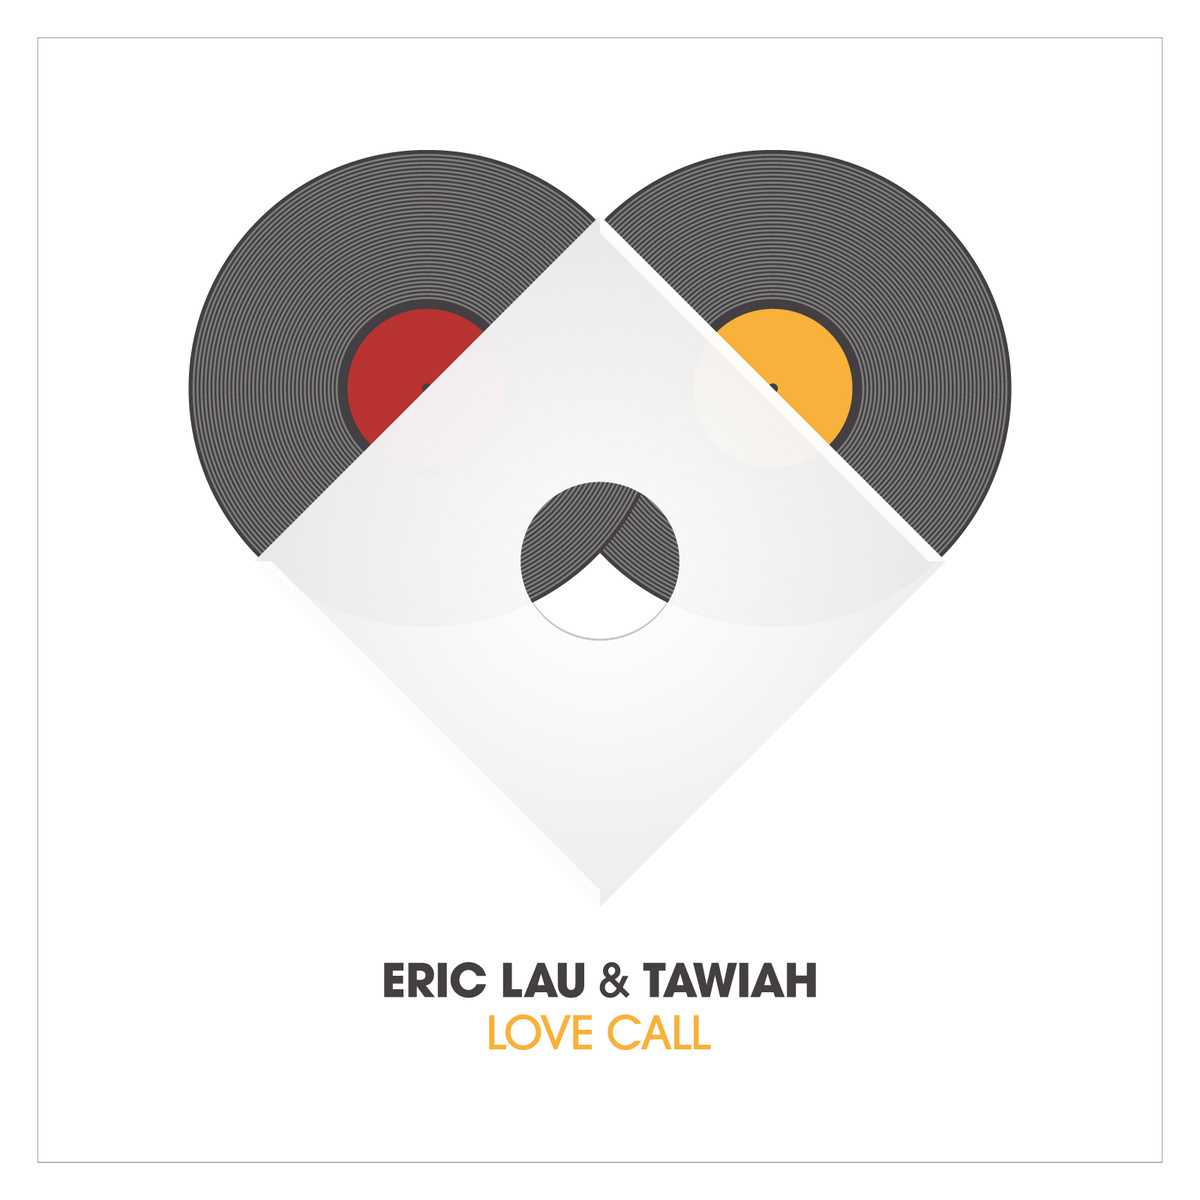 Eric Lau x Tawiah ft. Kaidi Tatham "Favourite Truth" | @ericlaumusic @TawiahMusic @kaidi_kat 